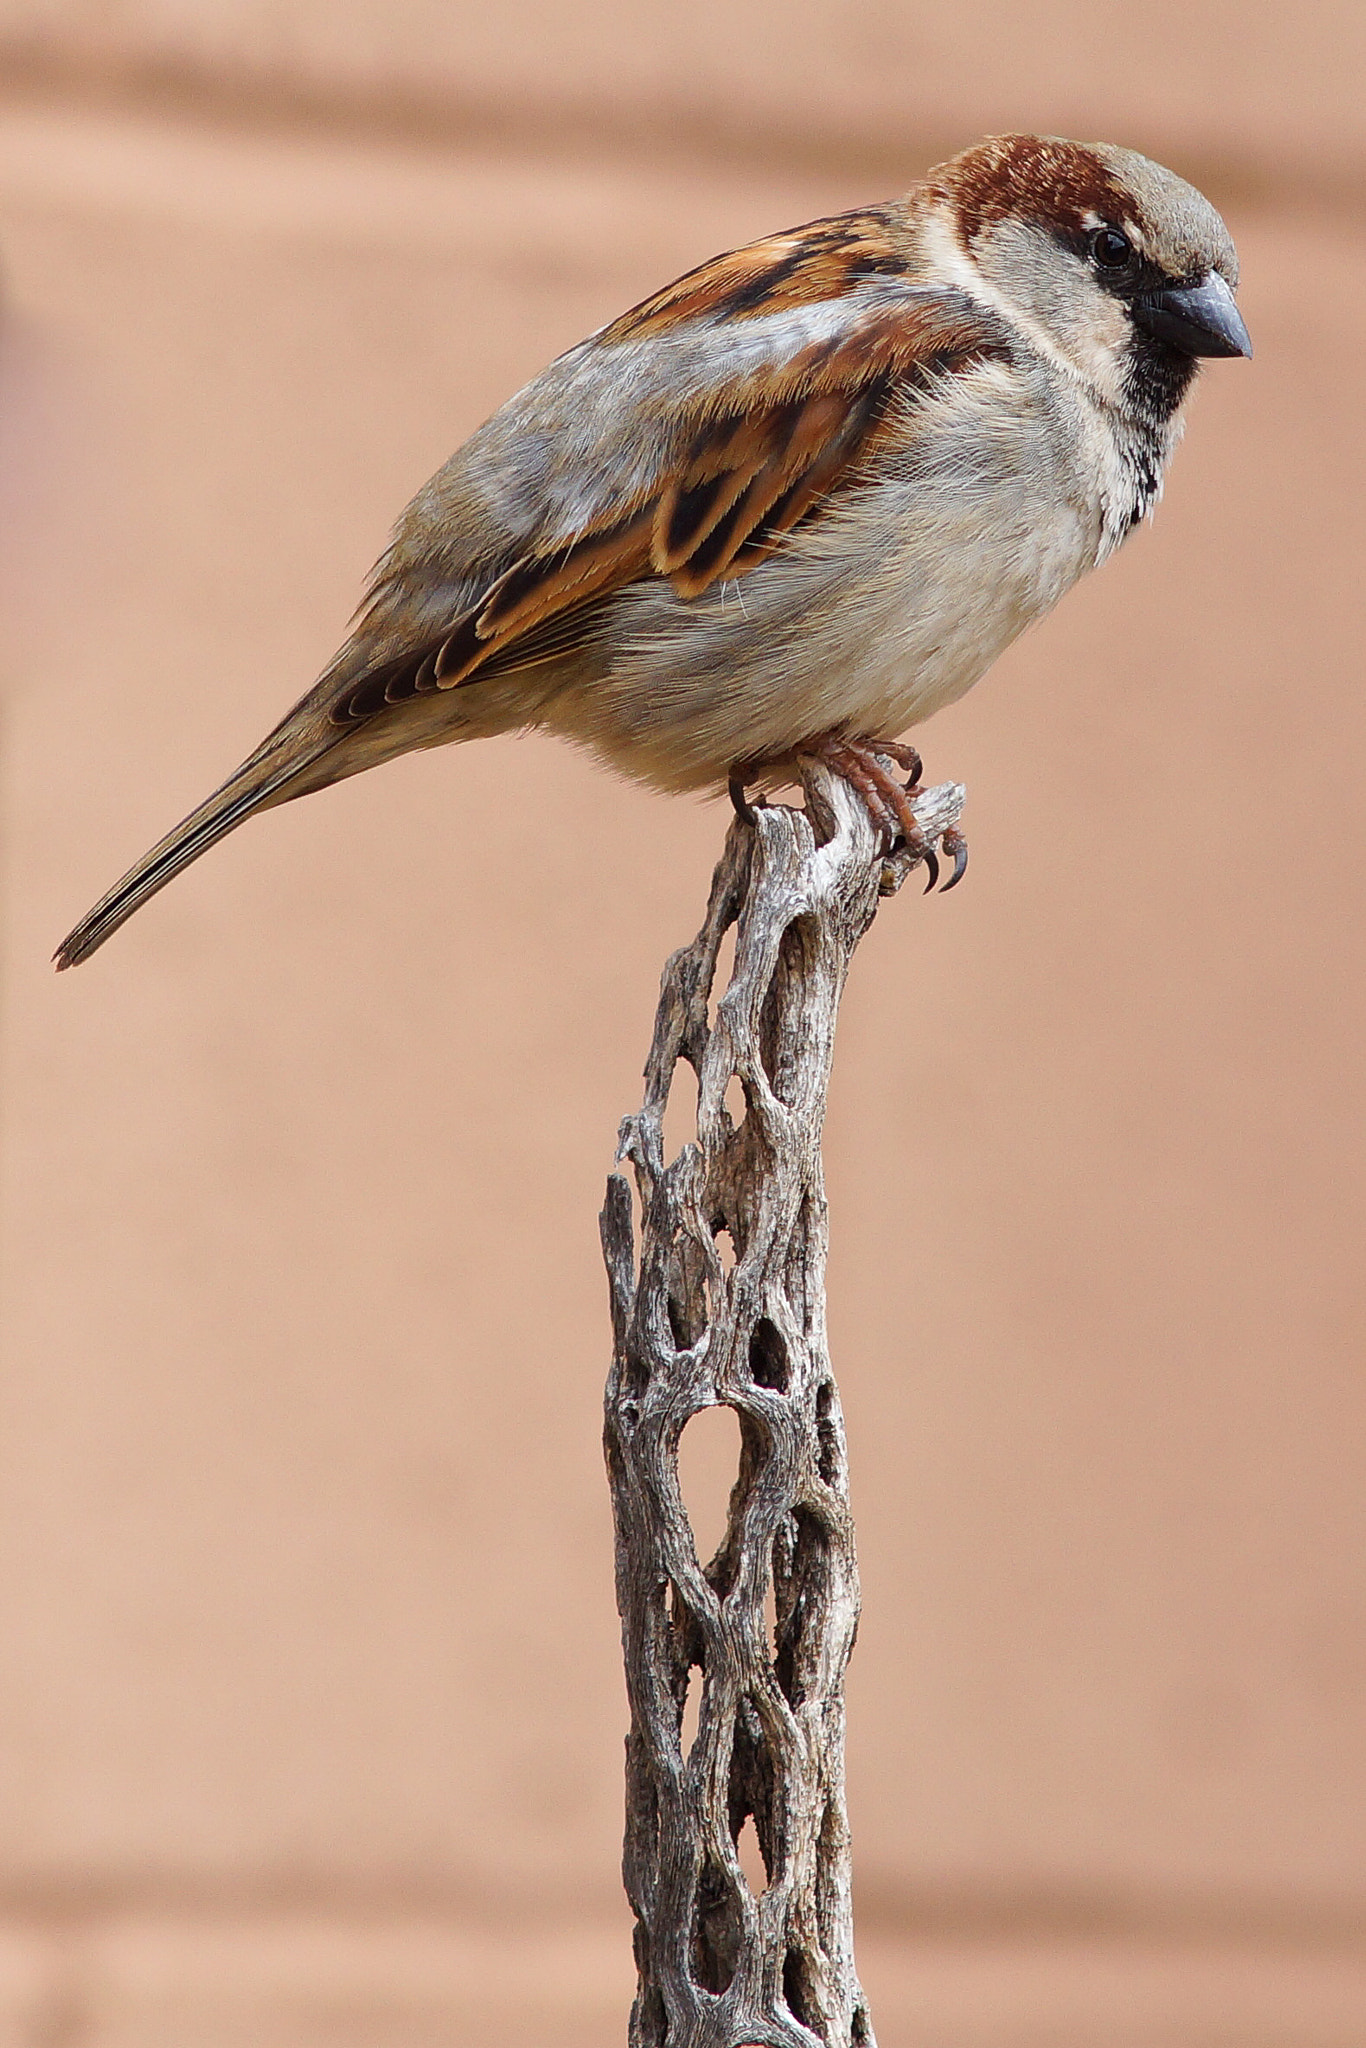 Sony SLT-A77 sample photo. House sparrow on cholla cactus photography